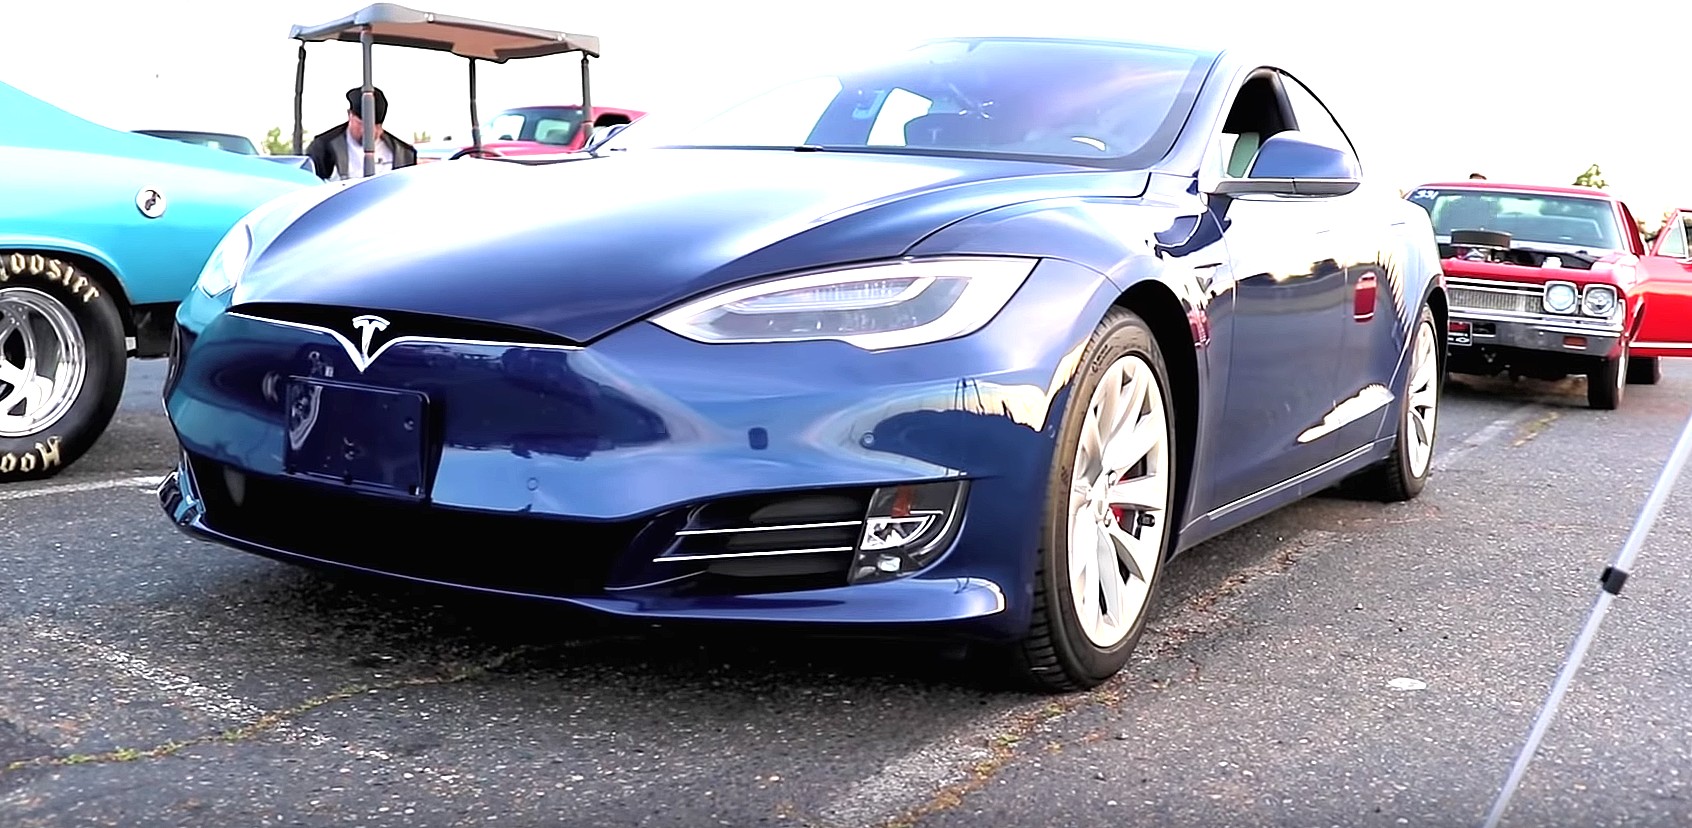 2019 Tesla Model S P100d How To Buy